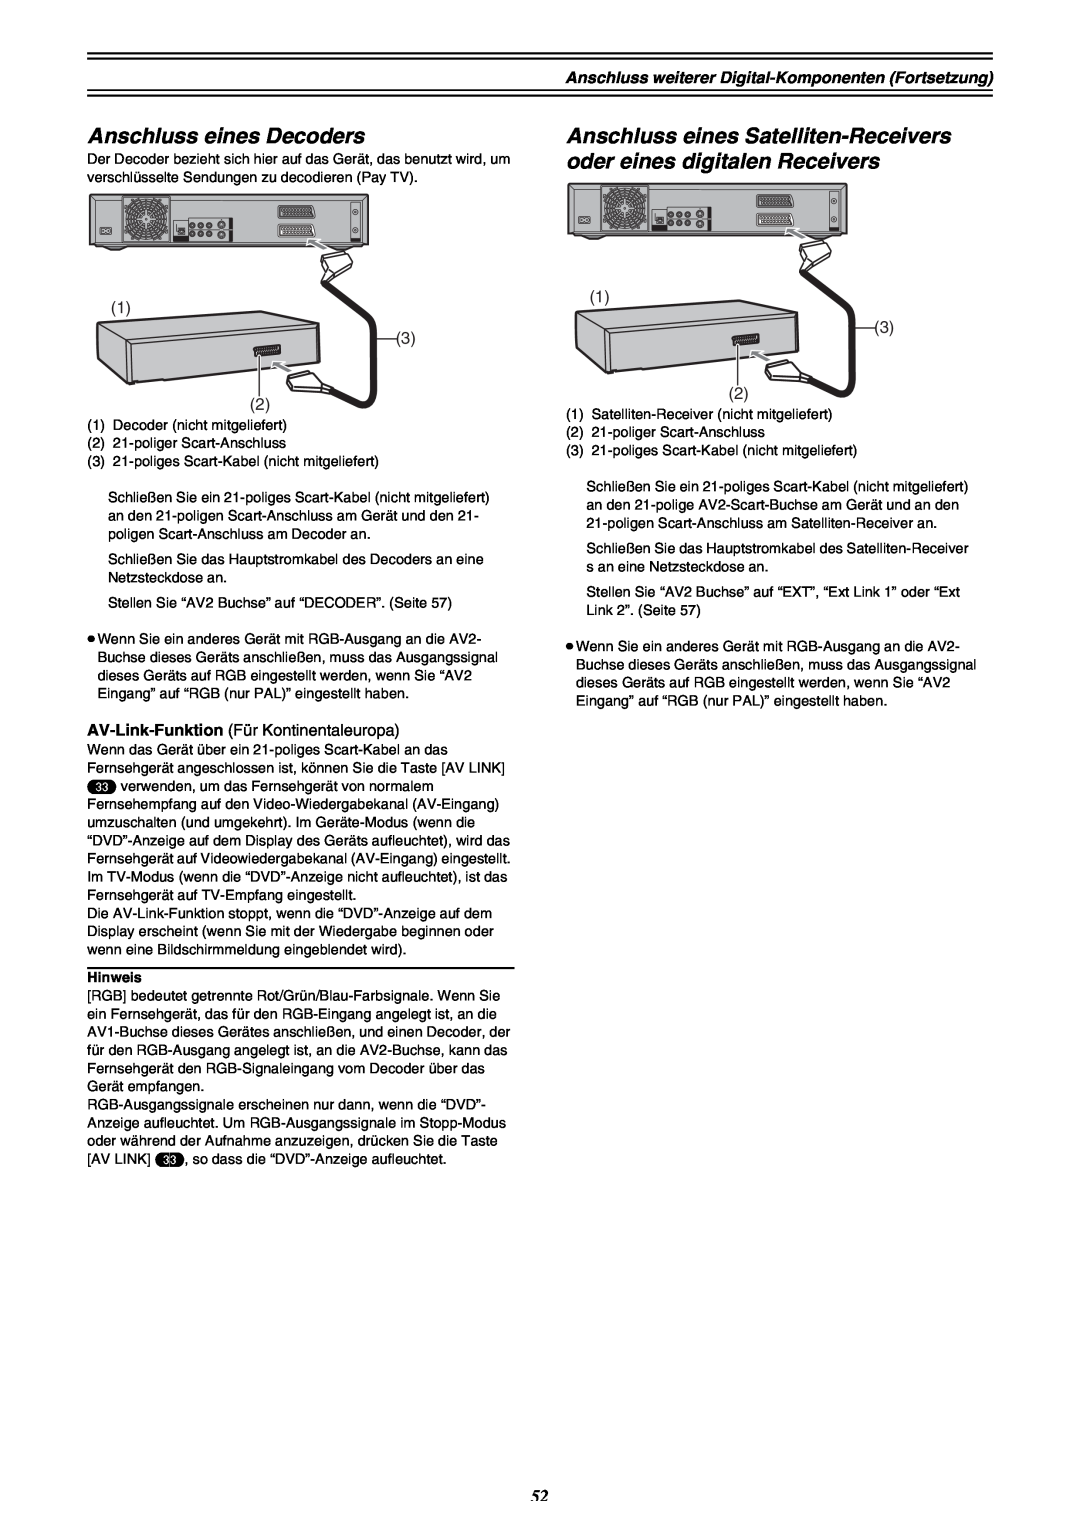 Panasonic DMR-E30 manual Anschluss eines Decoders, Anschluss eines Satelliten-Receivers oder eines digitalen Receivers 